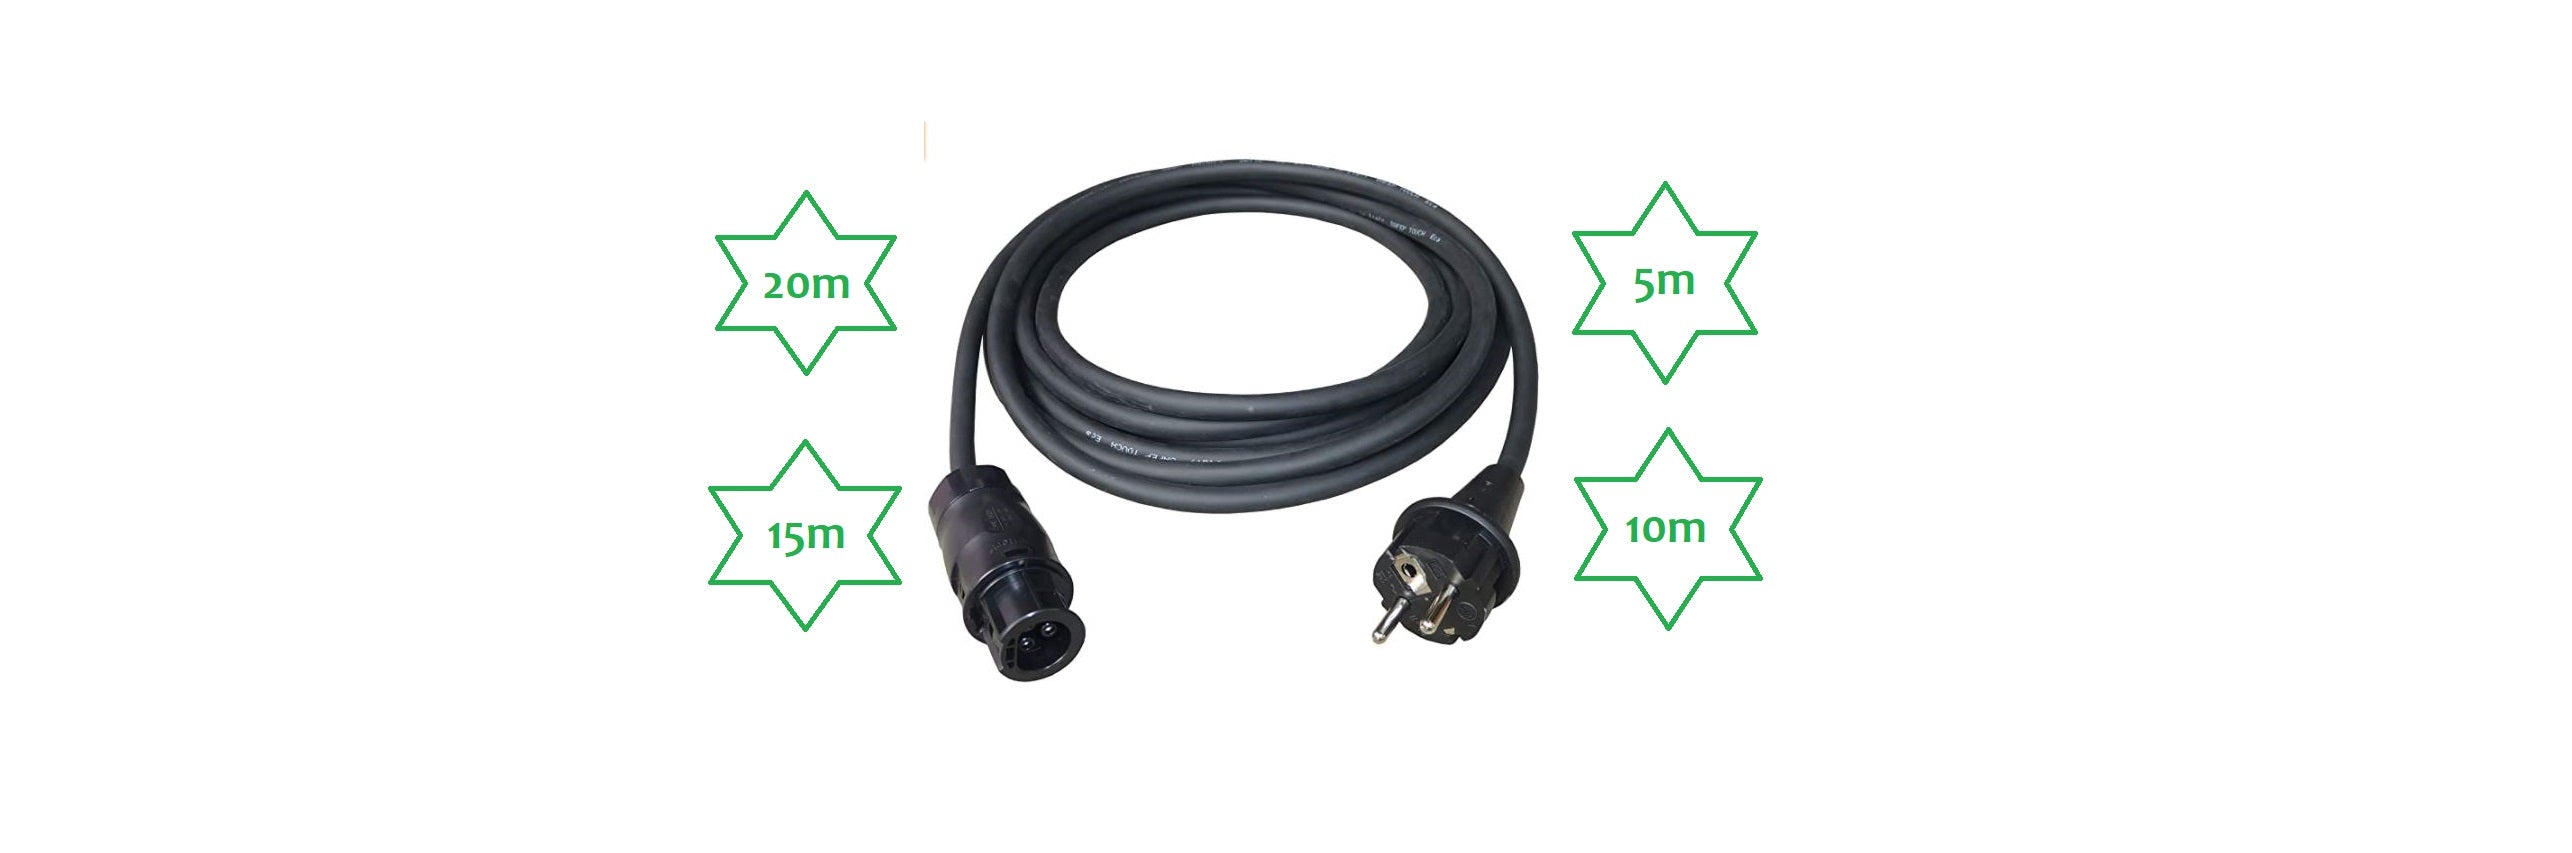 Kabel fürs Balkonkraftwerk – MyVoltaics